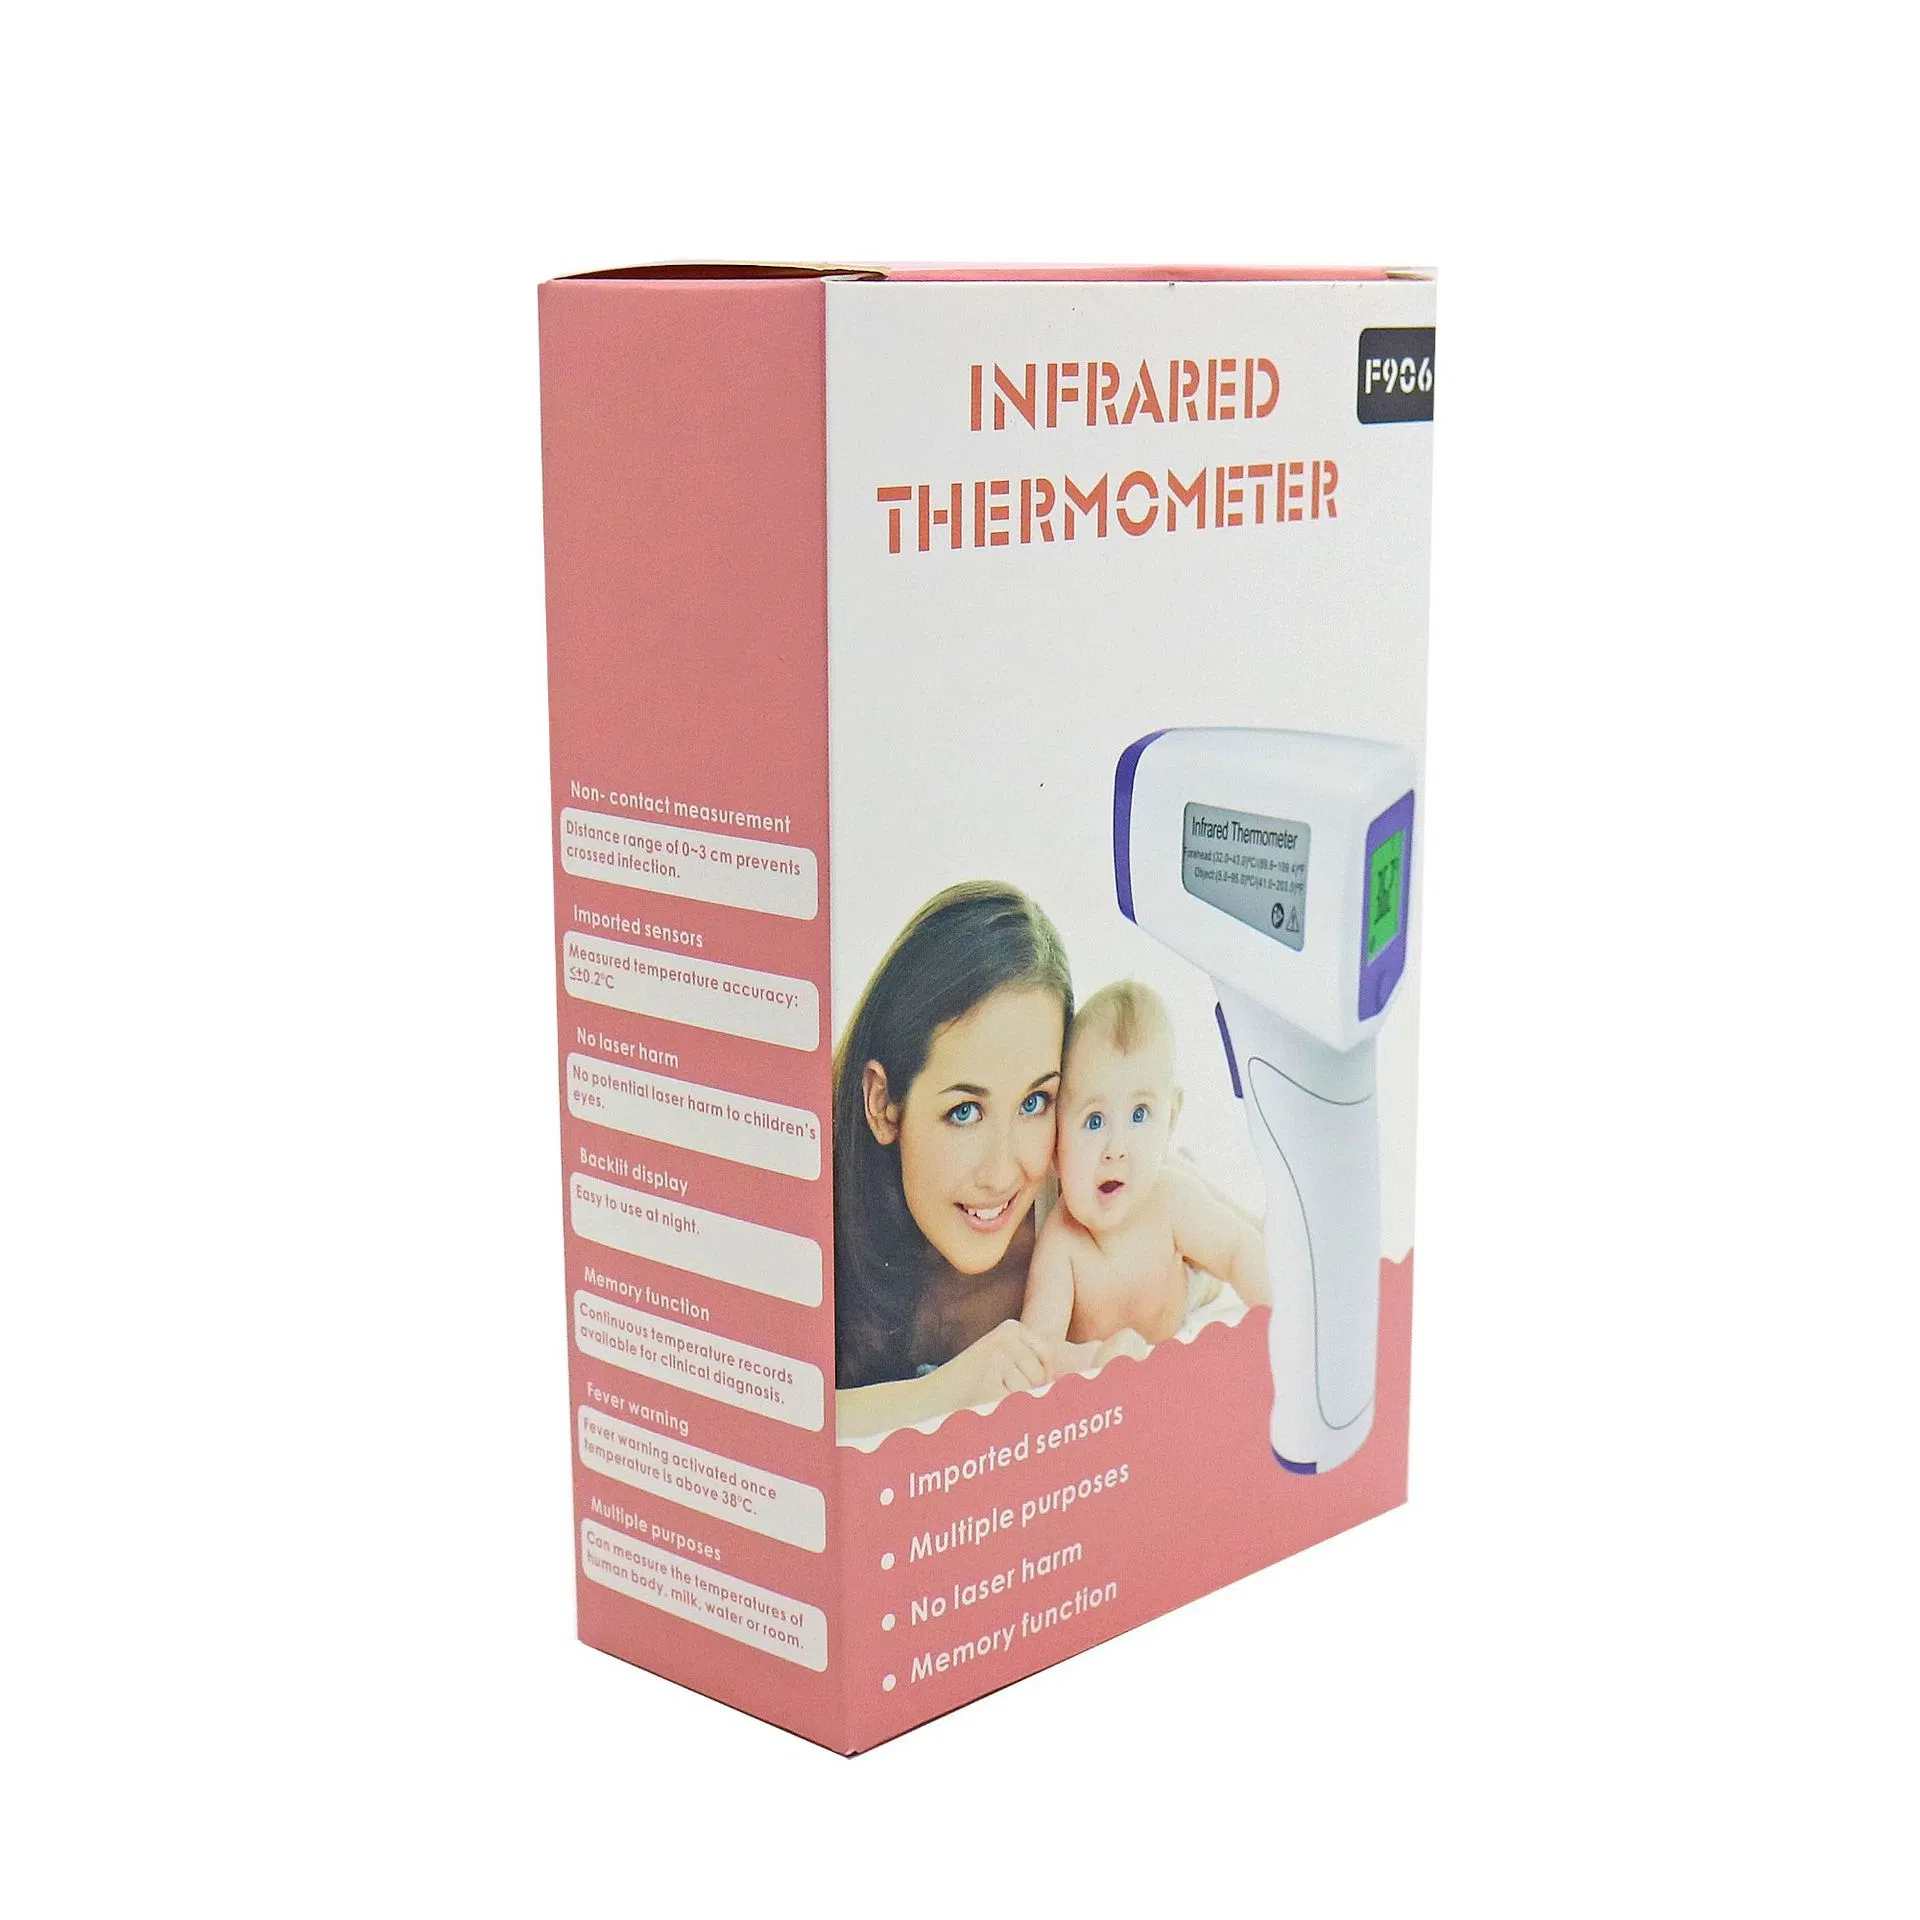 Специализированные медицинские малыша и термометр Soft-Head электронный термометр цифровой термометр MT017 фабрику и Новый цвет .